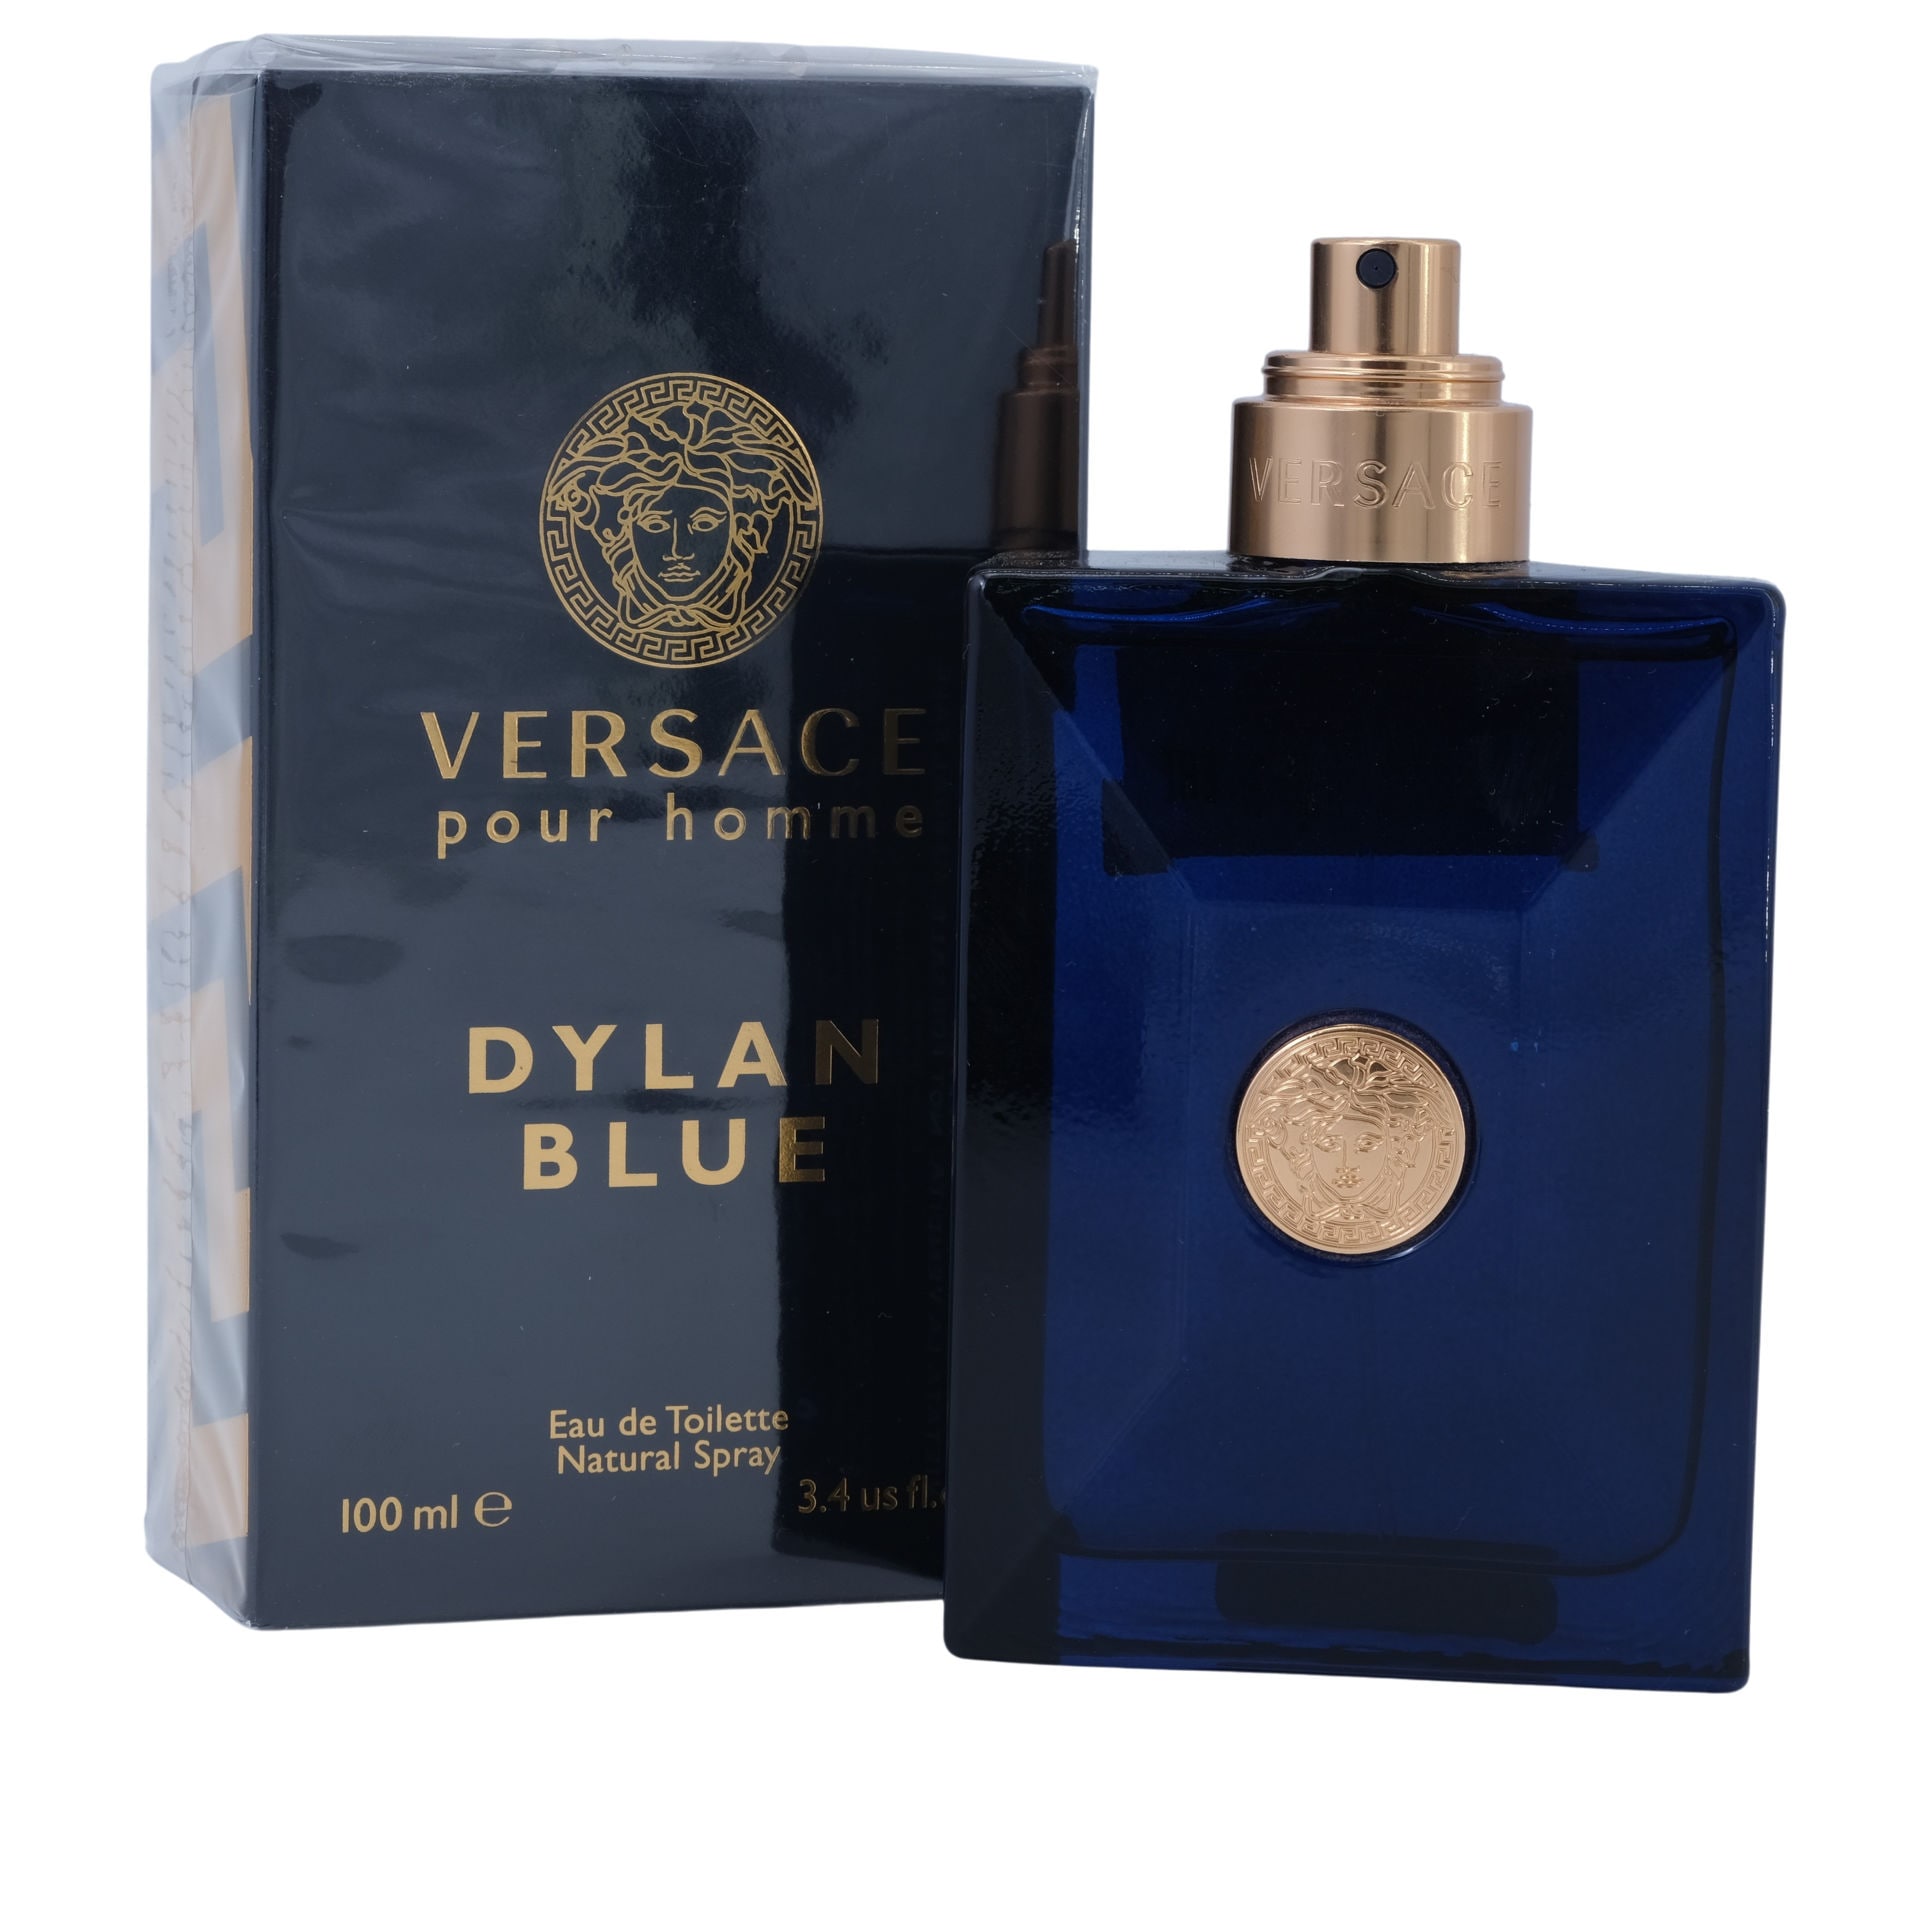 Shop Versace Pour Homme Dylan Blue Eau De Toilette Natural Spray , 100ml